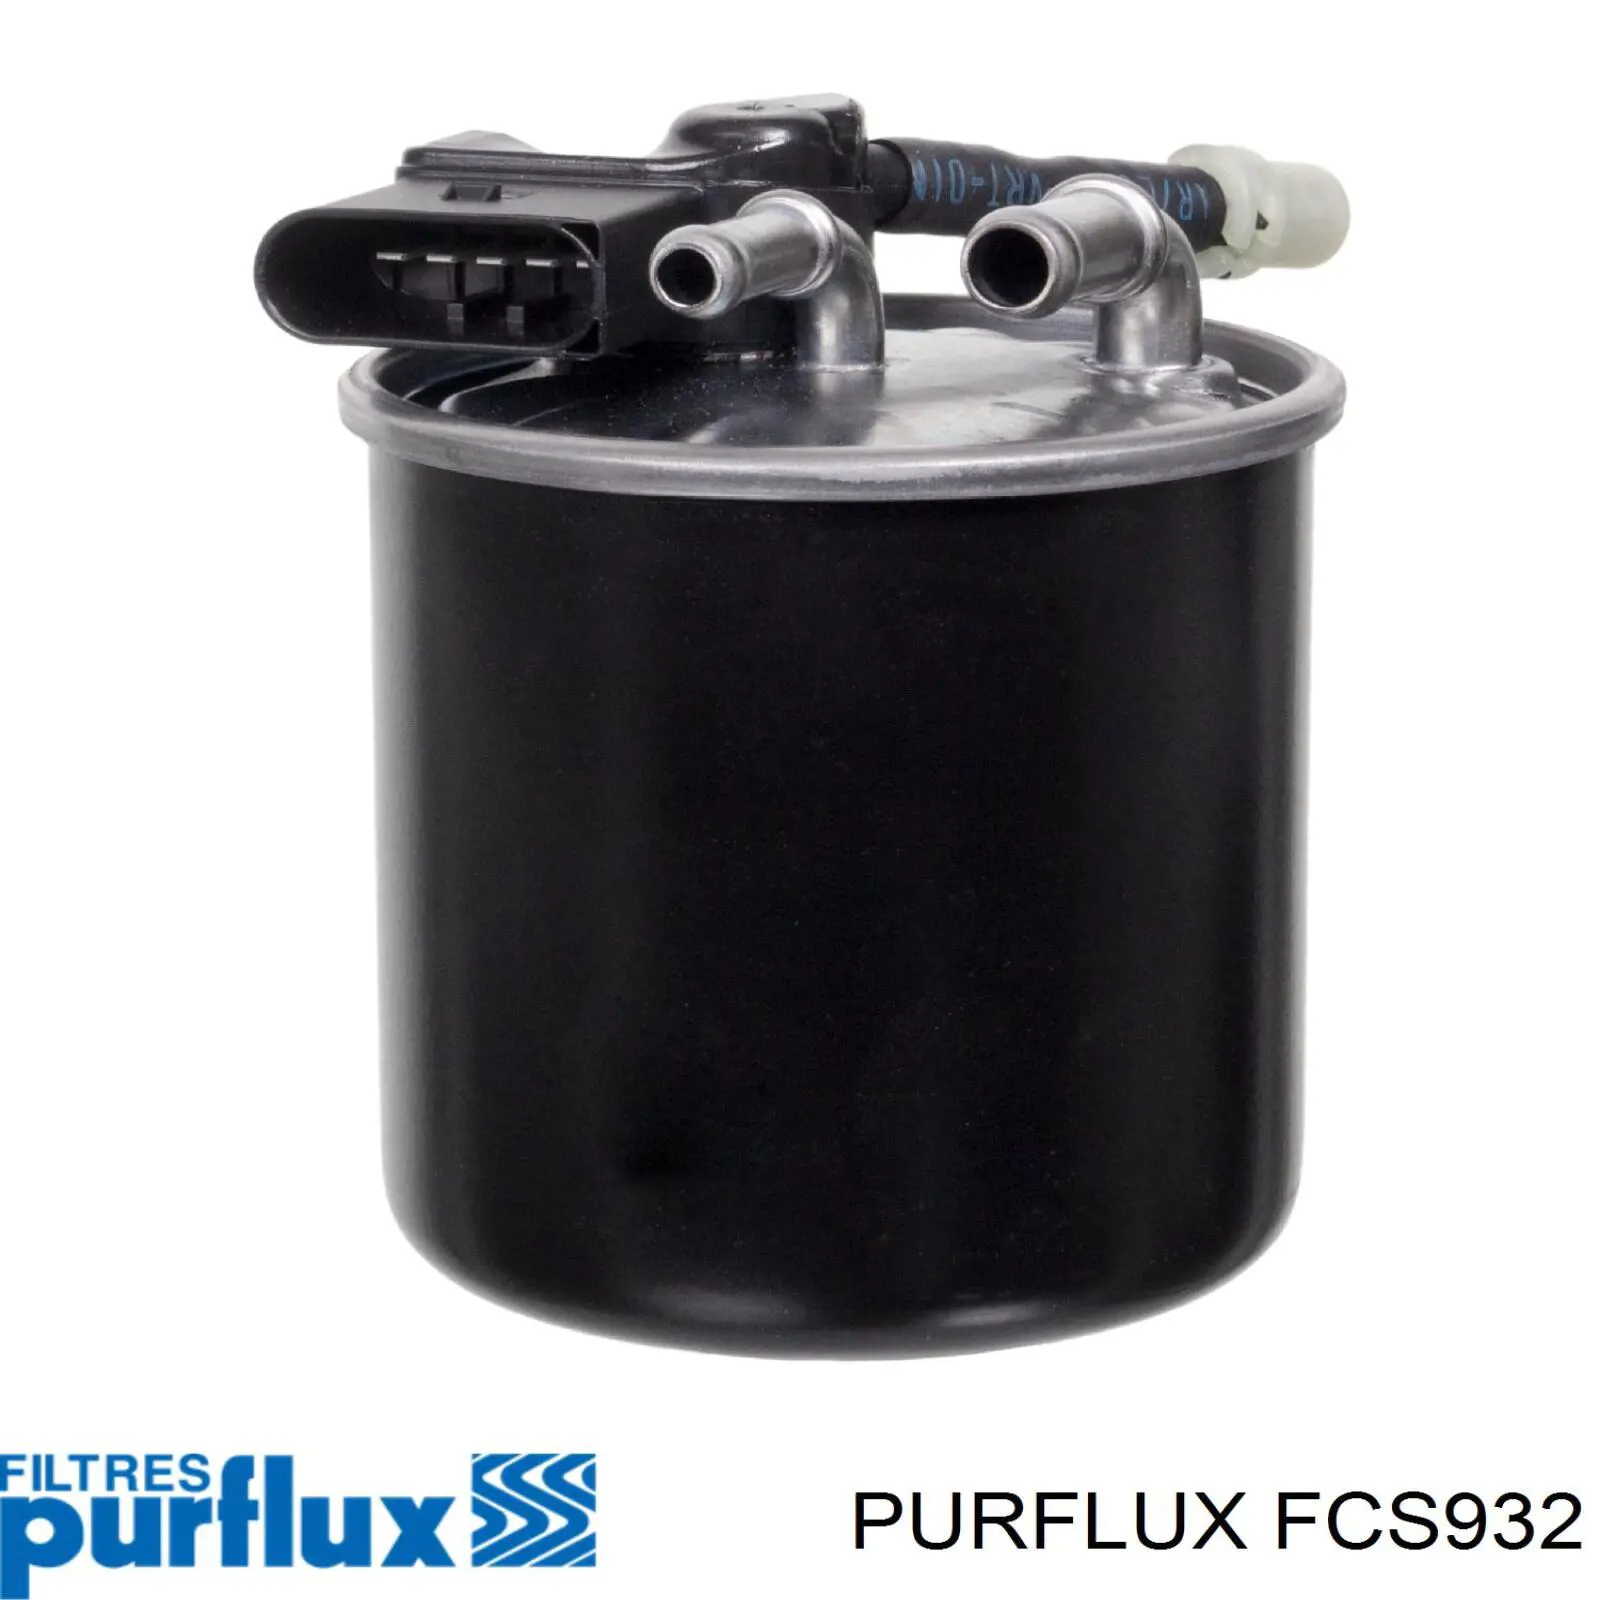 FCS932 Purflux filtro de combustible